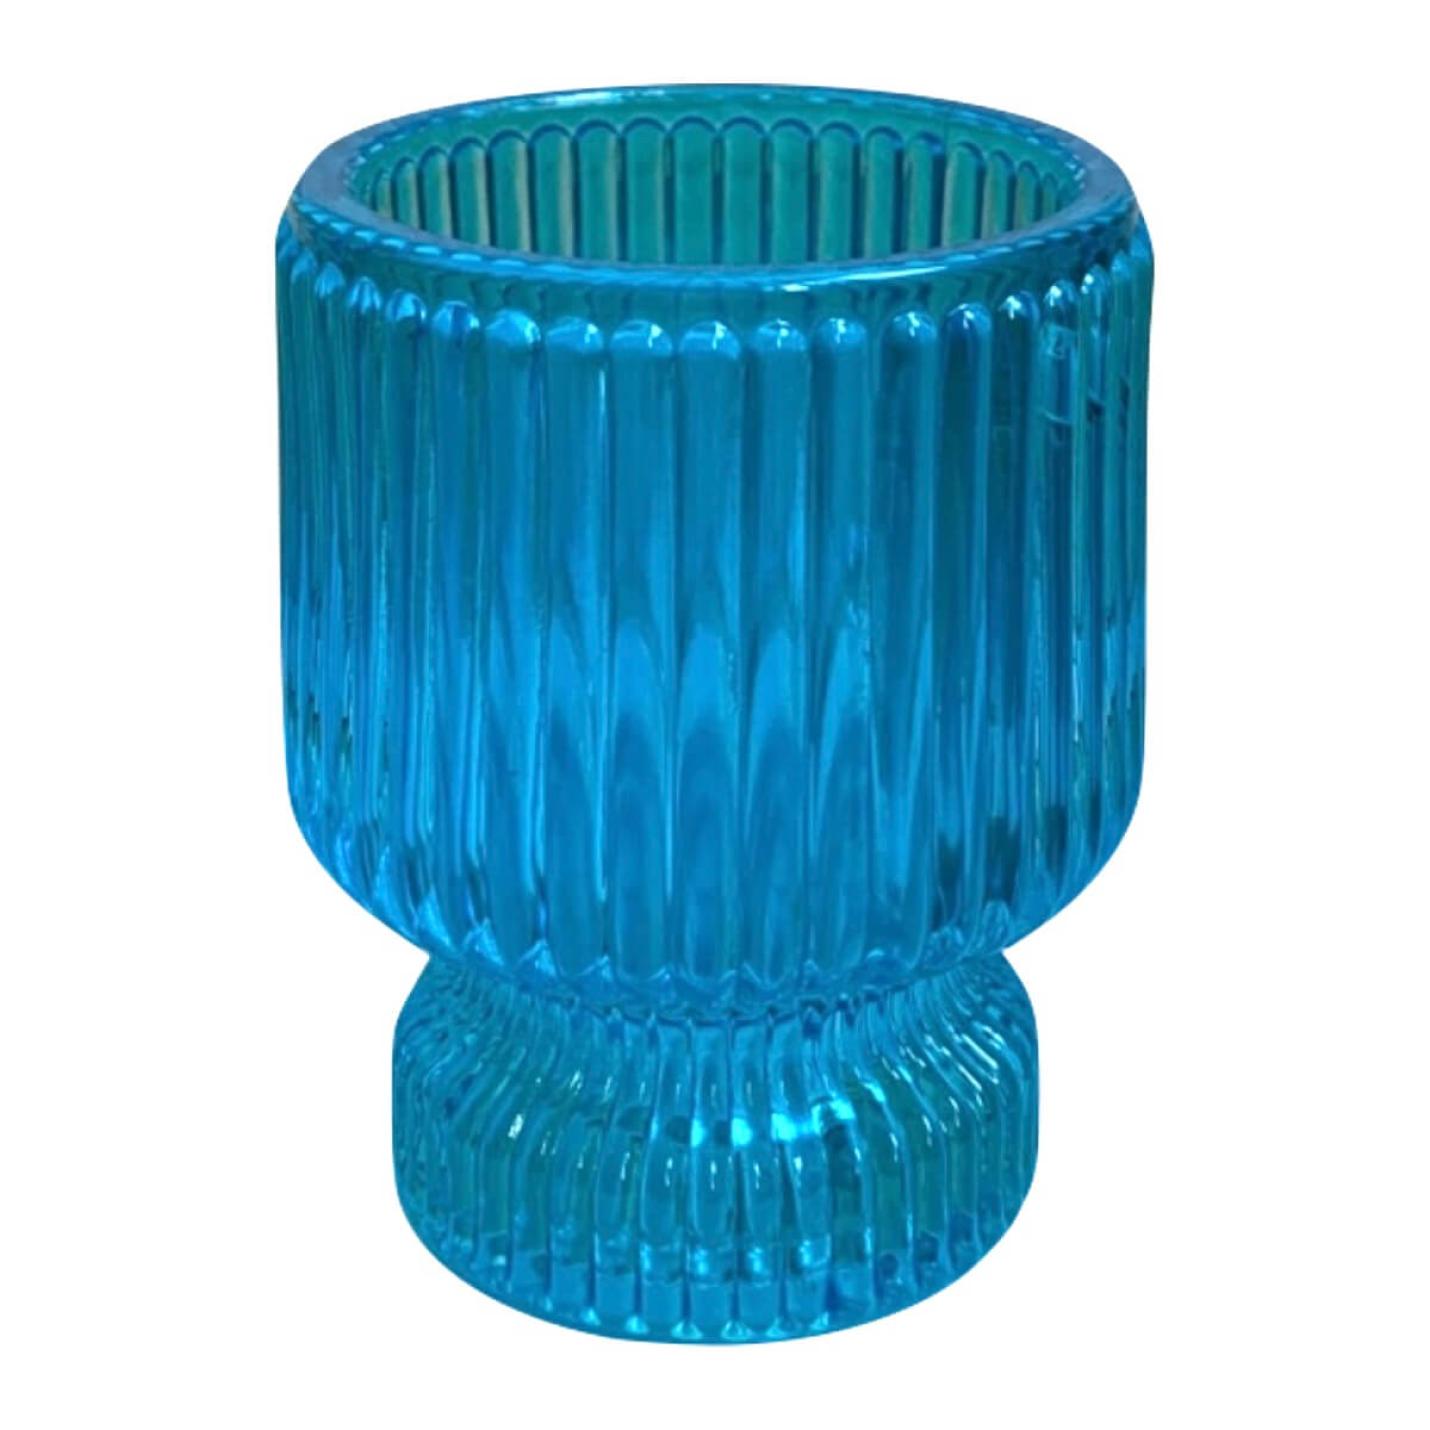 Glazen kandelaar / waxinehouder in aqua blauw; Afbeelding: 2